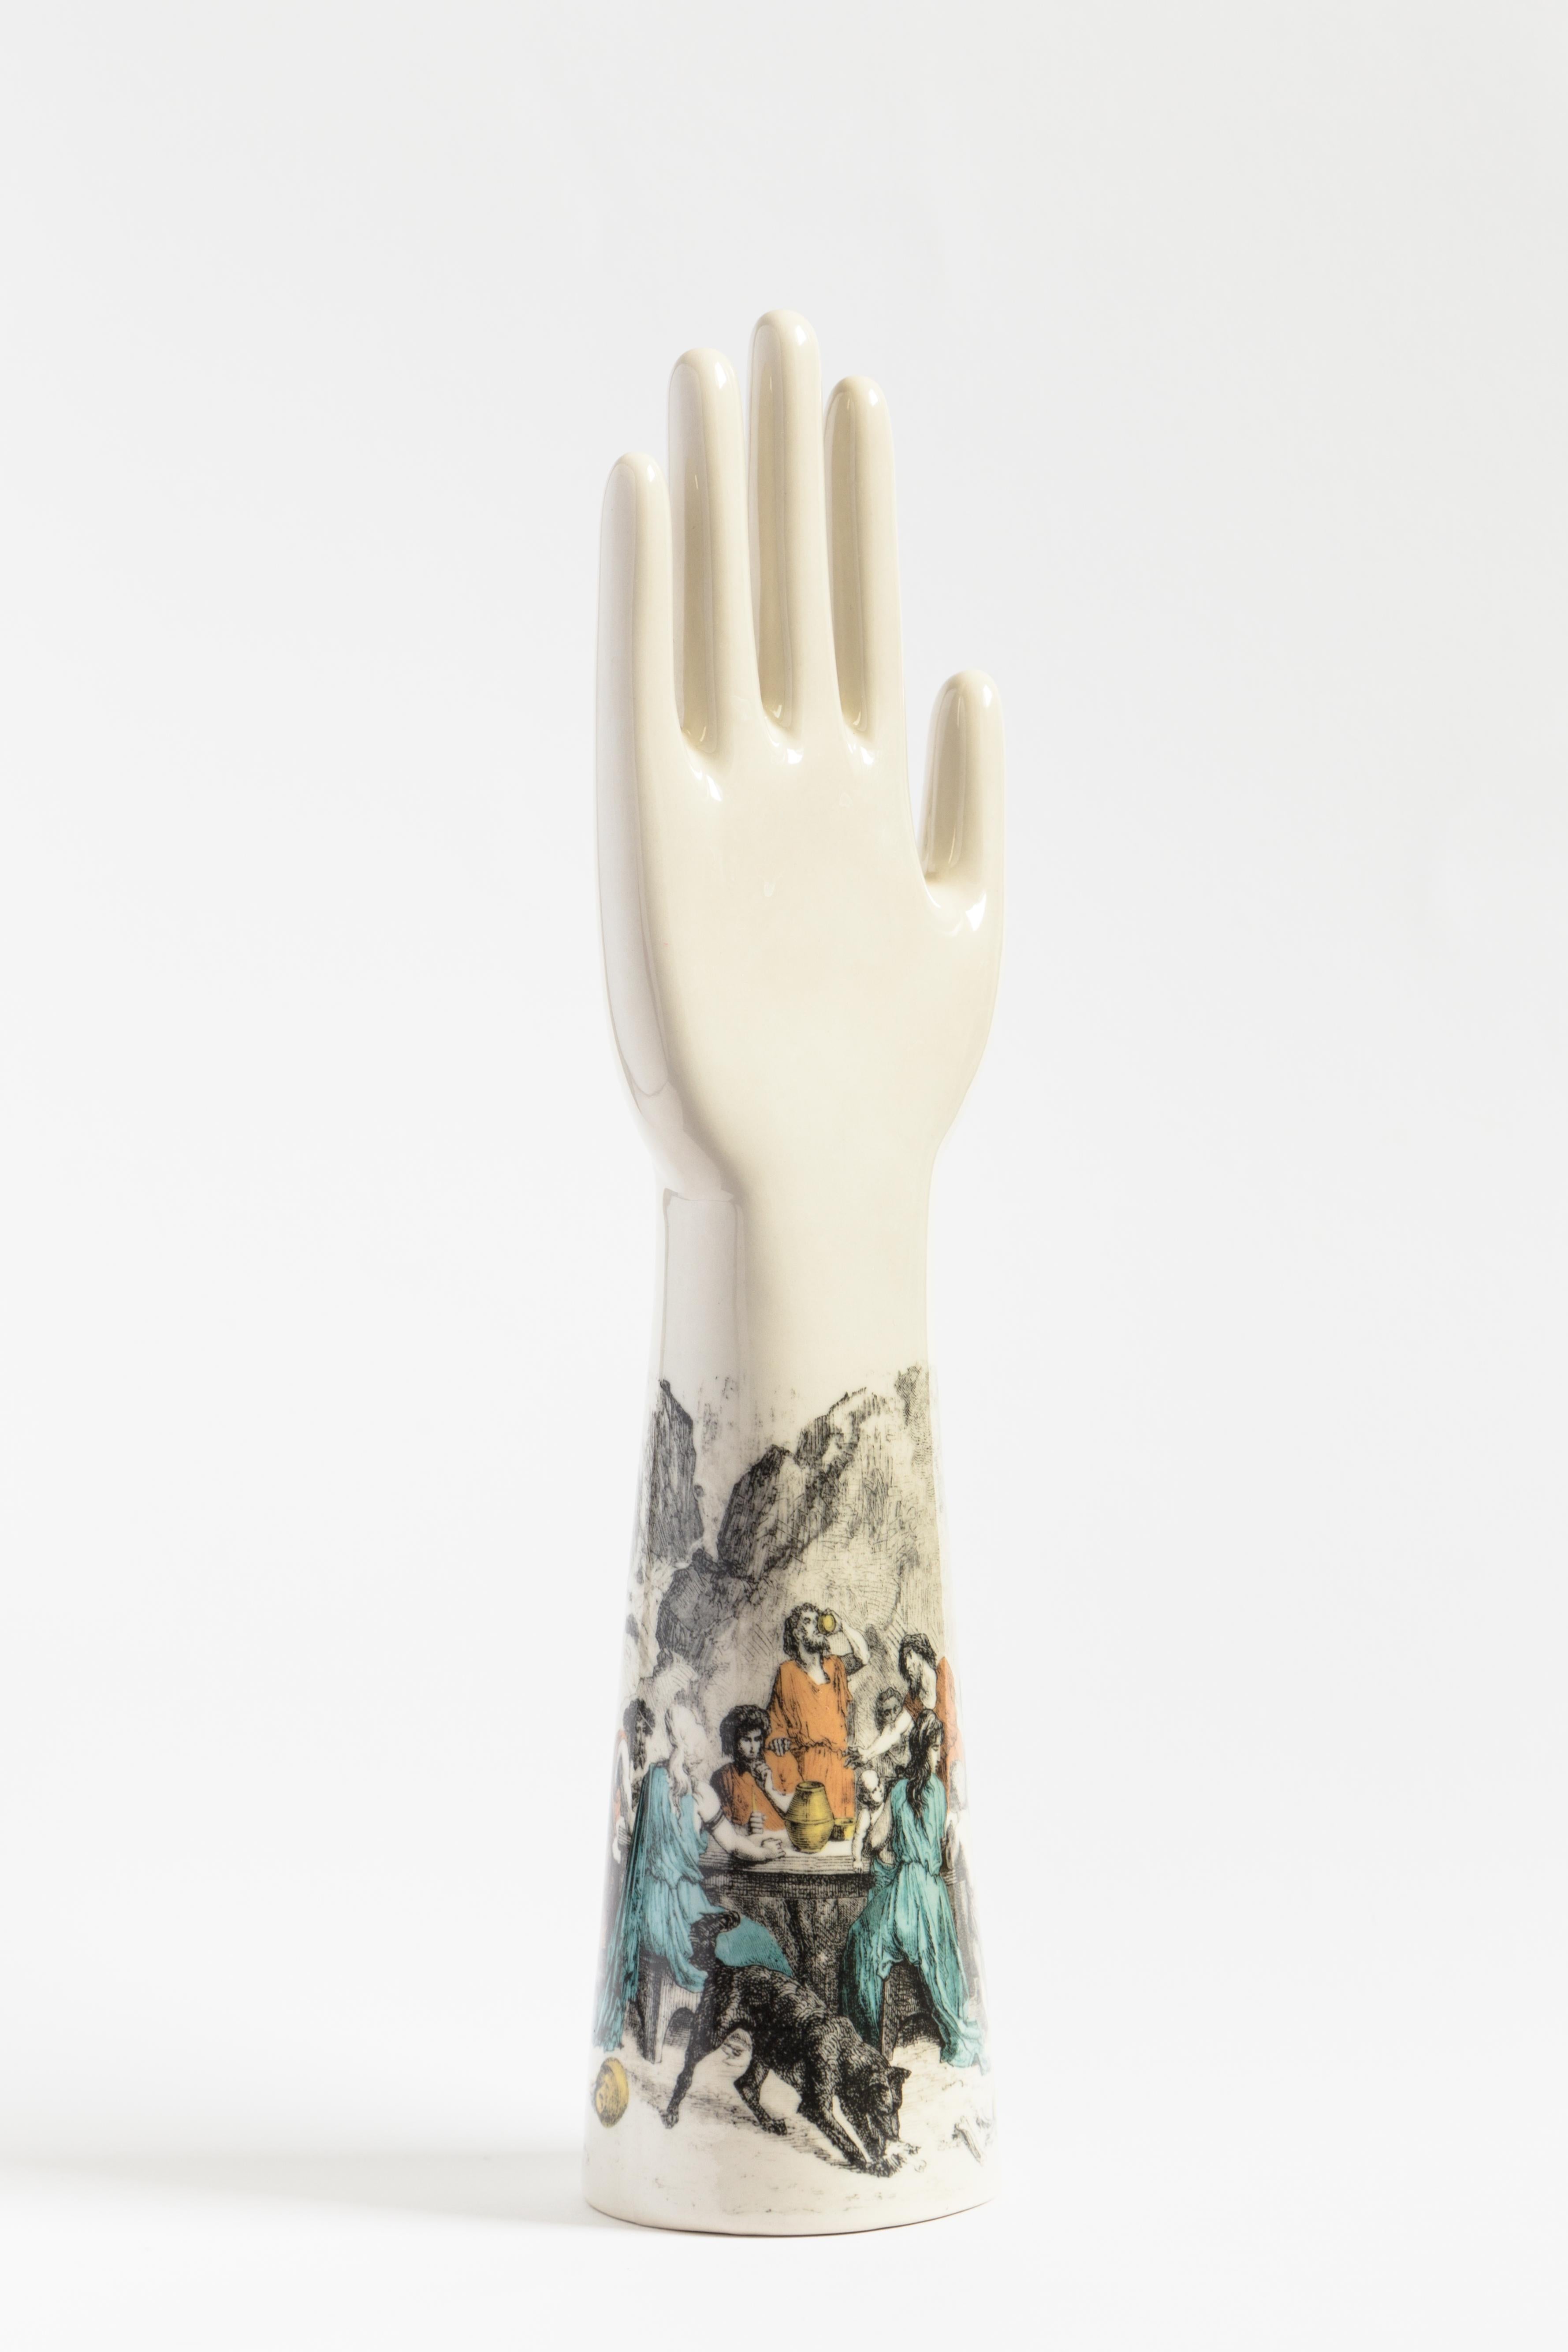 Diese auffällige Skulptur ist Teil der Serie Anatomica von Vito Nesta, die dekorative Objekte mit einfachen und essentiellen anatomischen Formen umfasst, die sich durch kräftige, kontrastreiche Farben und modernes Flair auszeichnen. Die Skulptur aus